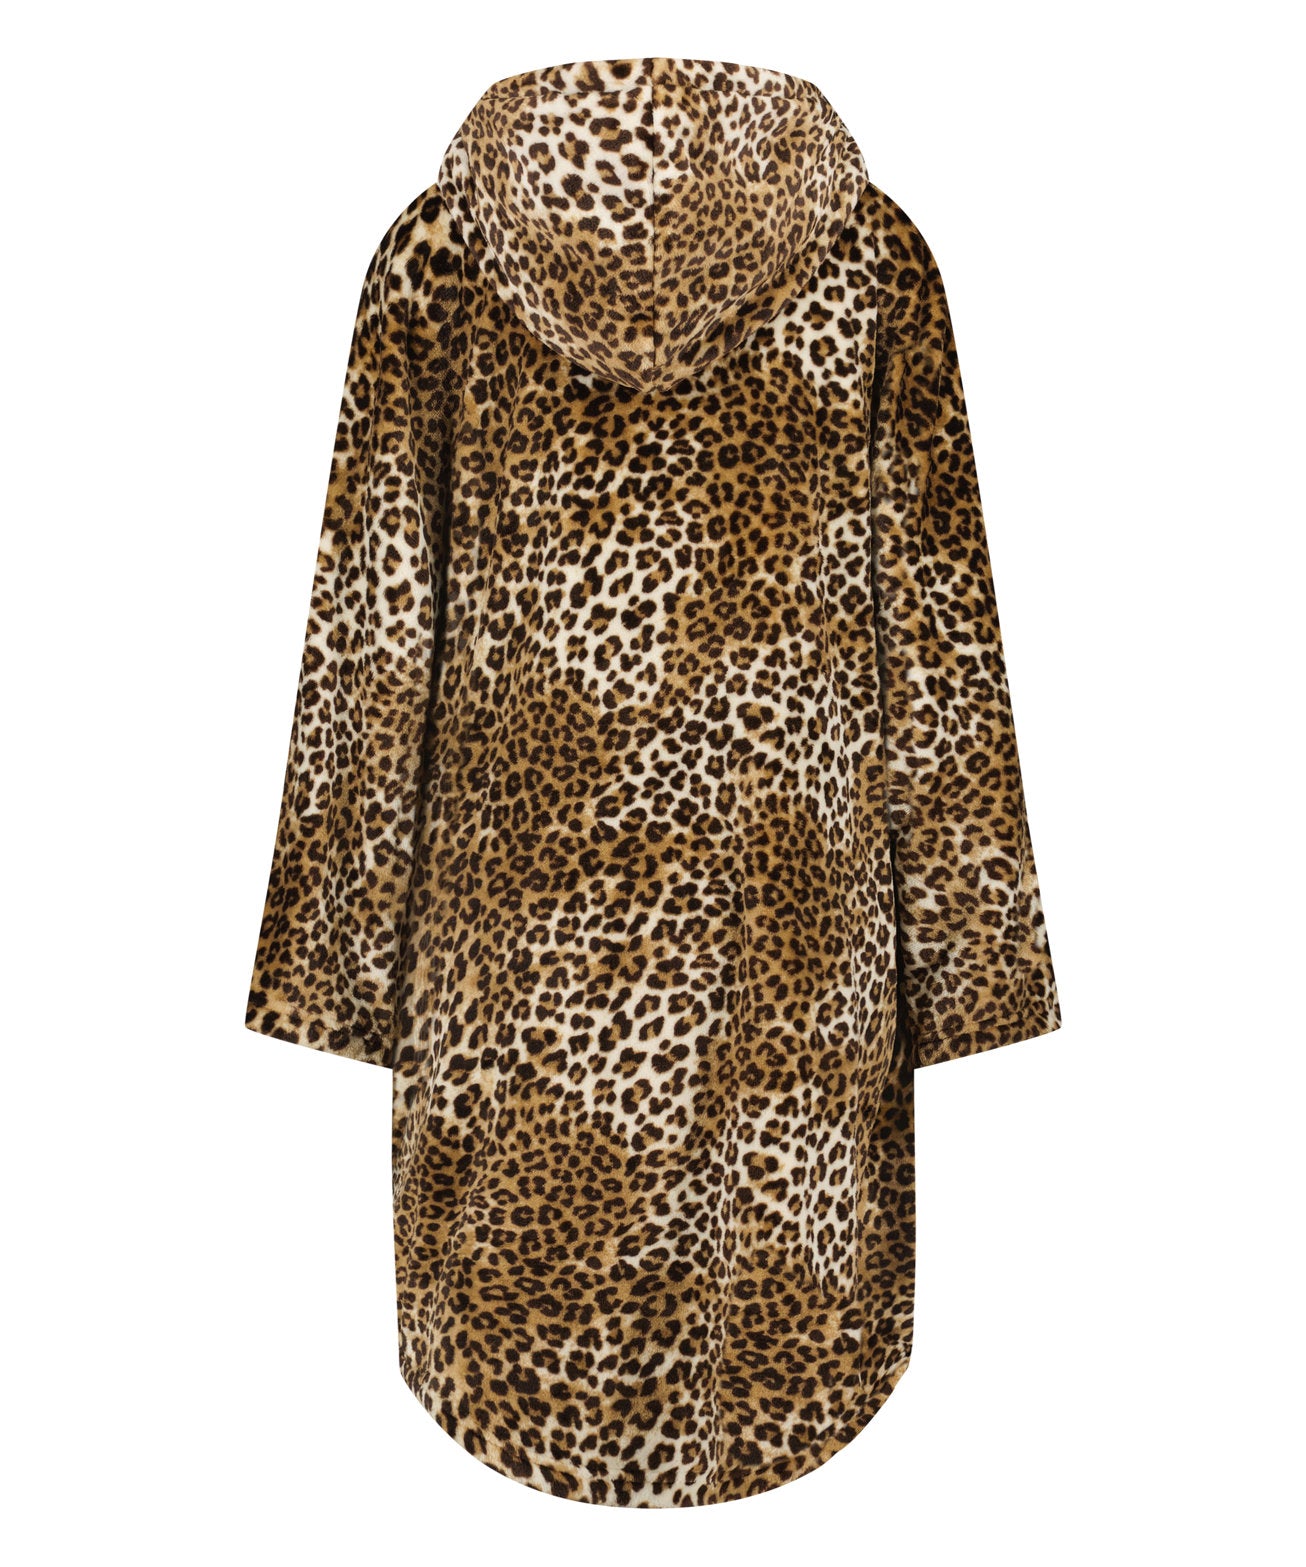 Poncho Flannel Fleece Leopard_204187_Oatmeal Melee_05